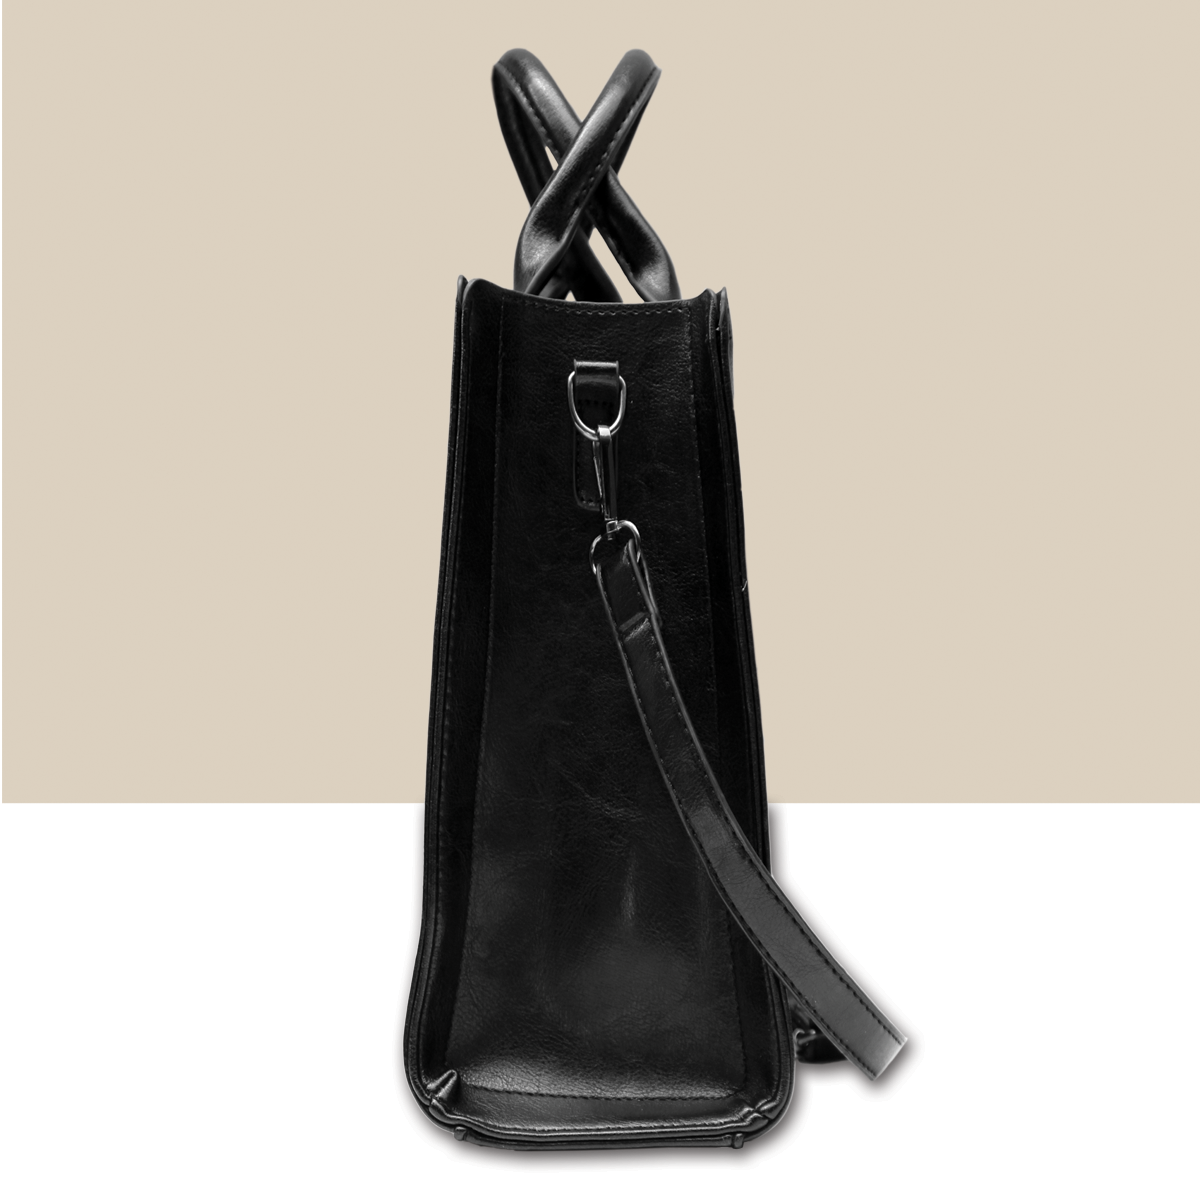 Dapple Dachshund Luxury Handbag V2